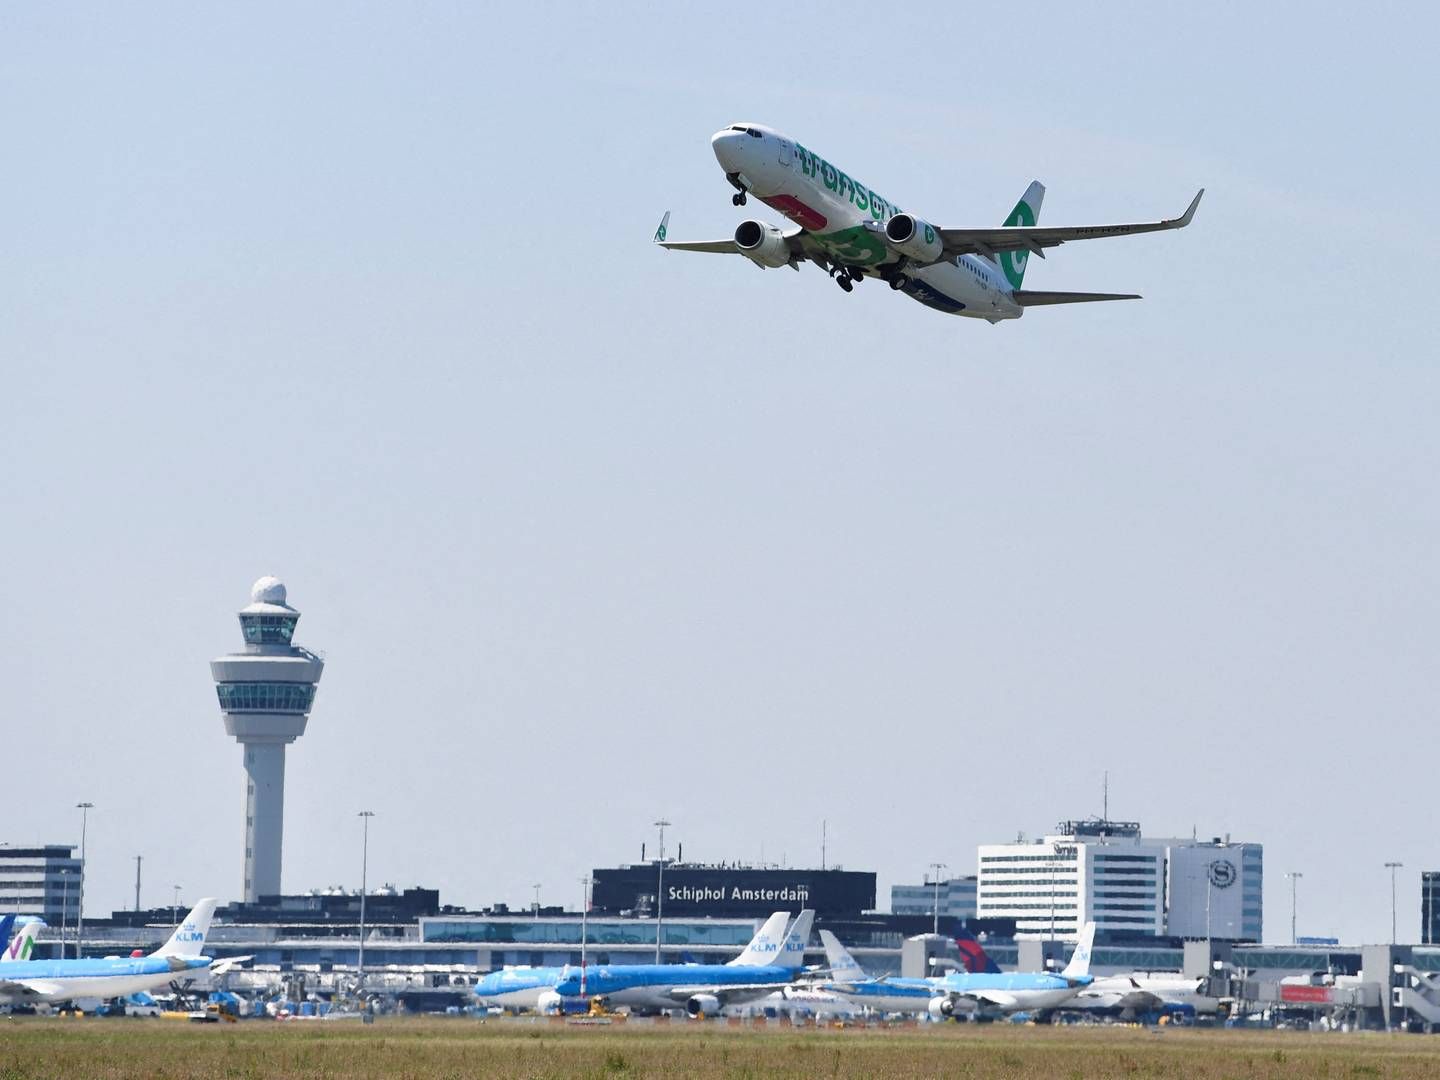 Det nye loft betyder, at der maksimalt må være 440.000 afgange om året her fra Schiphol-lufthavnen i Amsterdam. | Foto: PIROSCHKA VAN DE WOUW/REUTERS / X06750